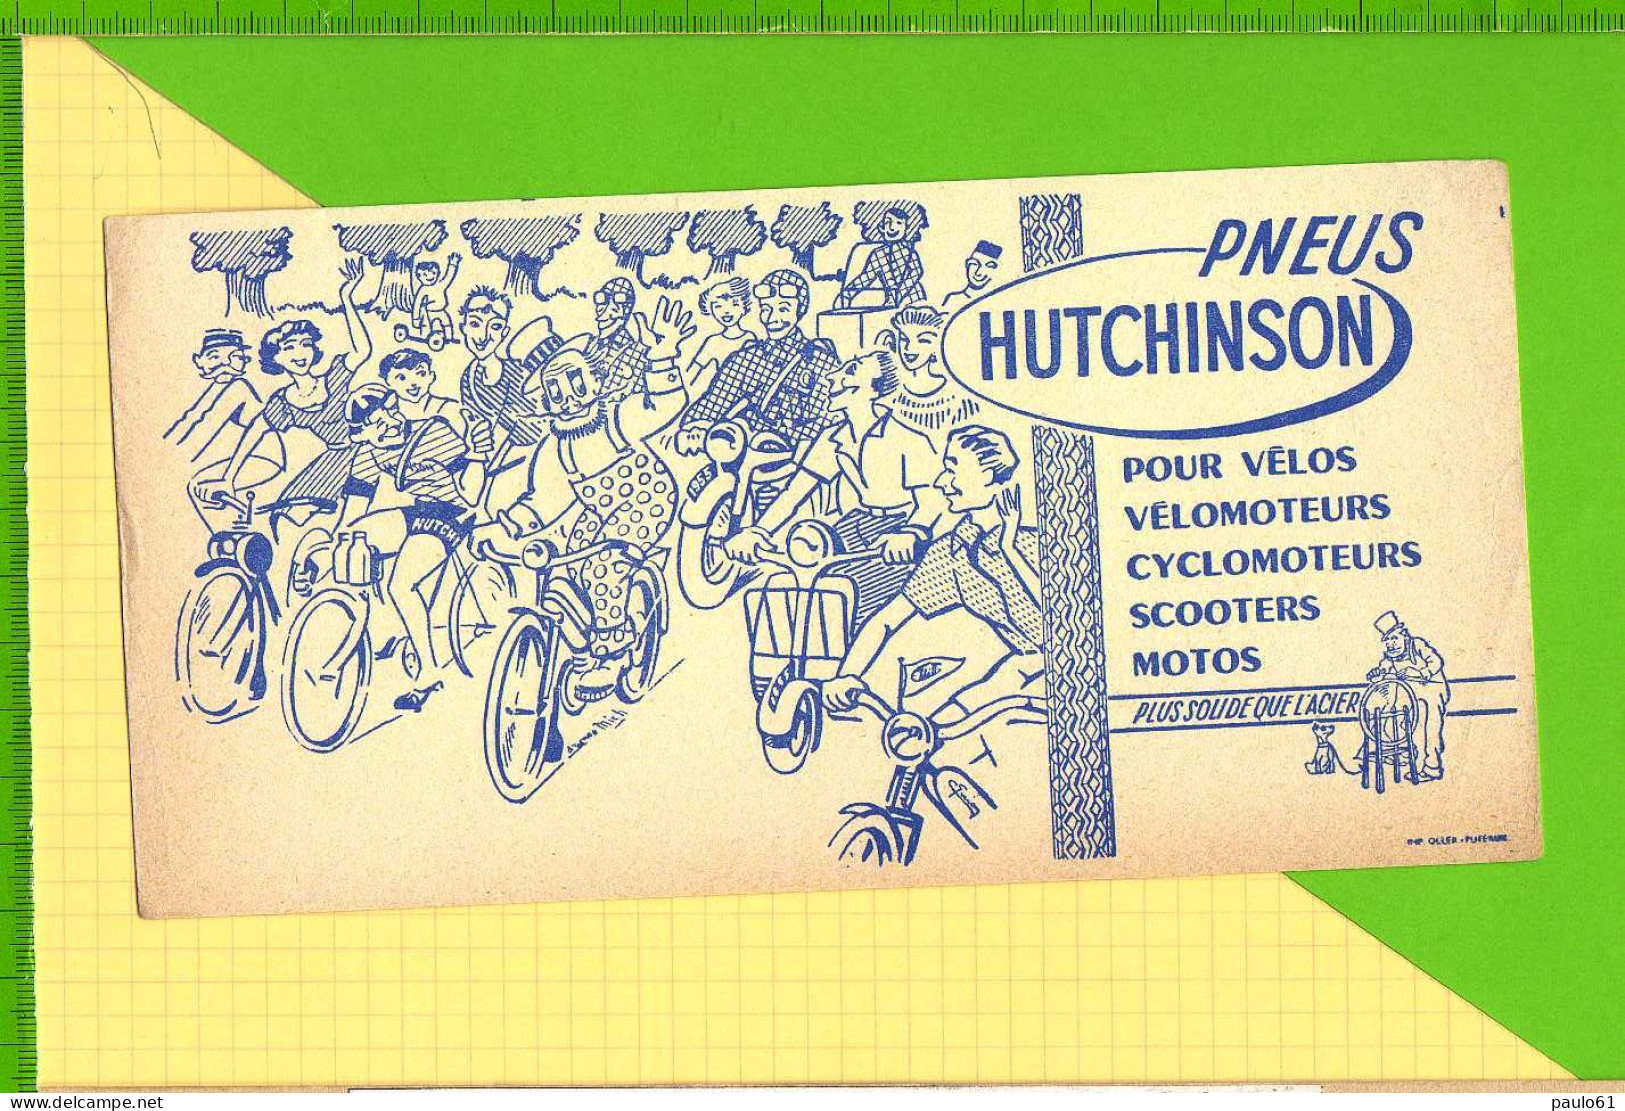 BUVARD & Blotting Paper :  Pneus HUTCHINSON  Velo Velomoteur Scooter Signé Mich Plus Solide Que L'Acier - Fahrrad & Moped